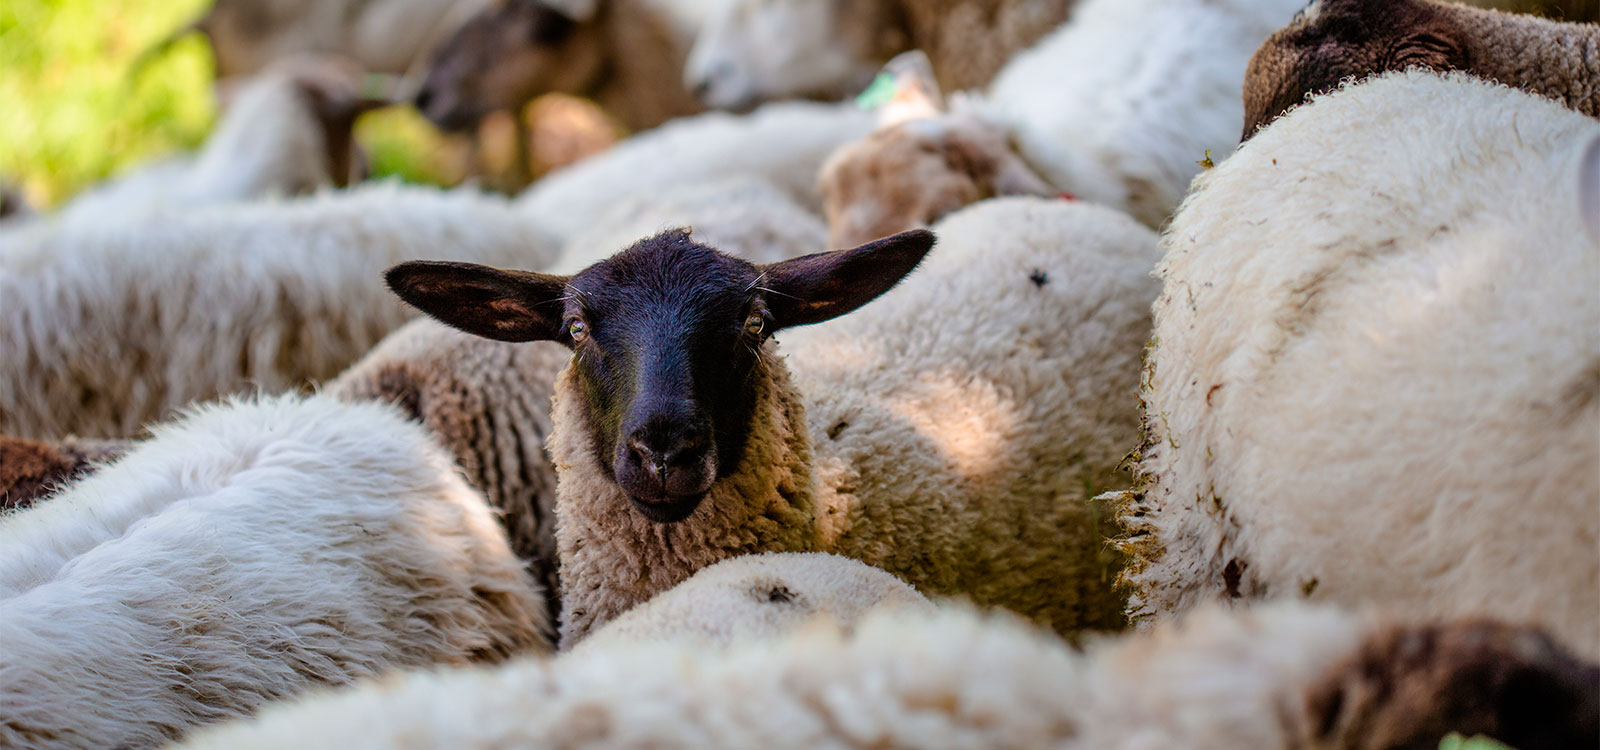 Pasteurelose em ovinos | Labmol Vet Laboratório Veterinário